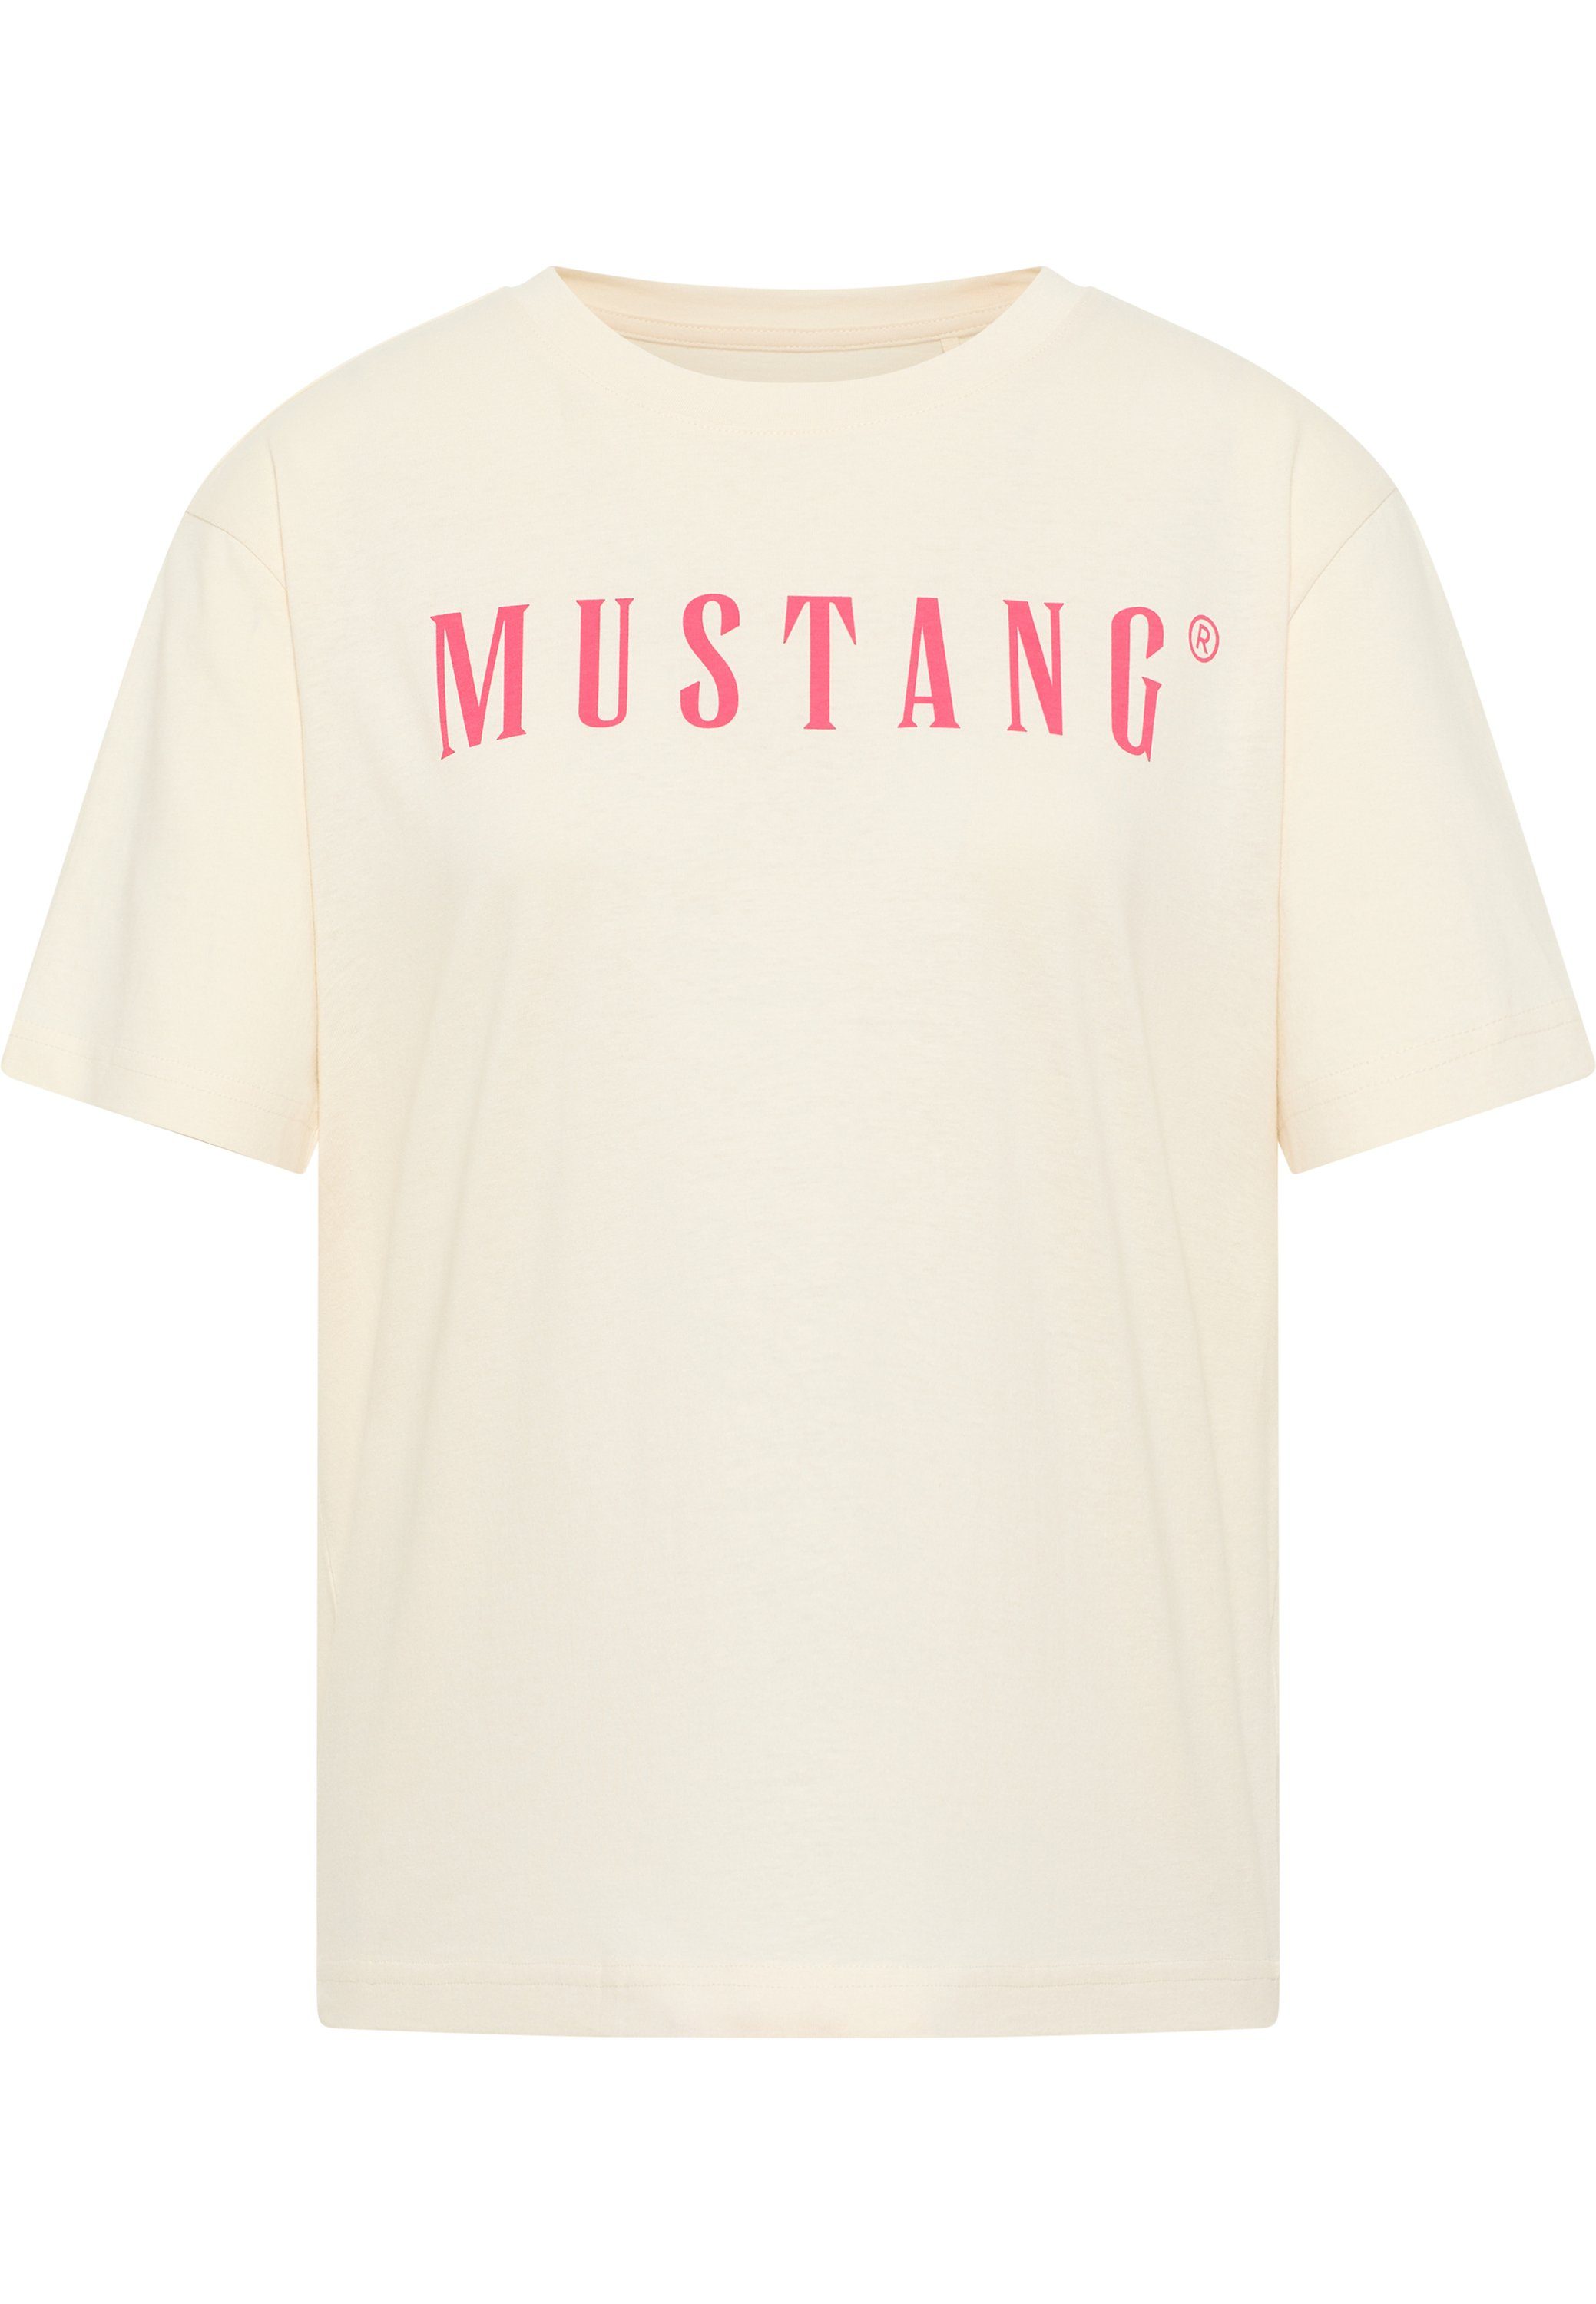 T-Shirt Kurzarmshirt T-Shirt Mustang Locker MUSTANG T-Shirt, geschnittenes